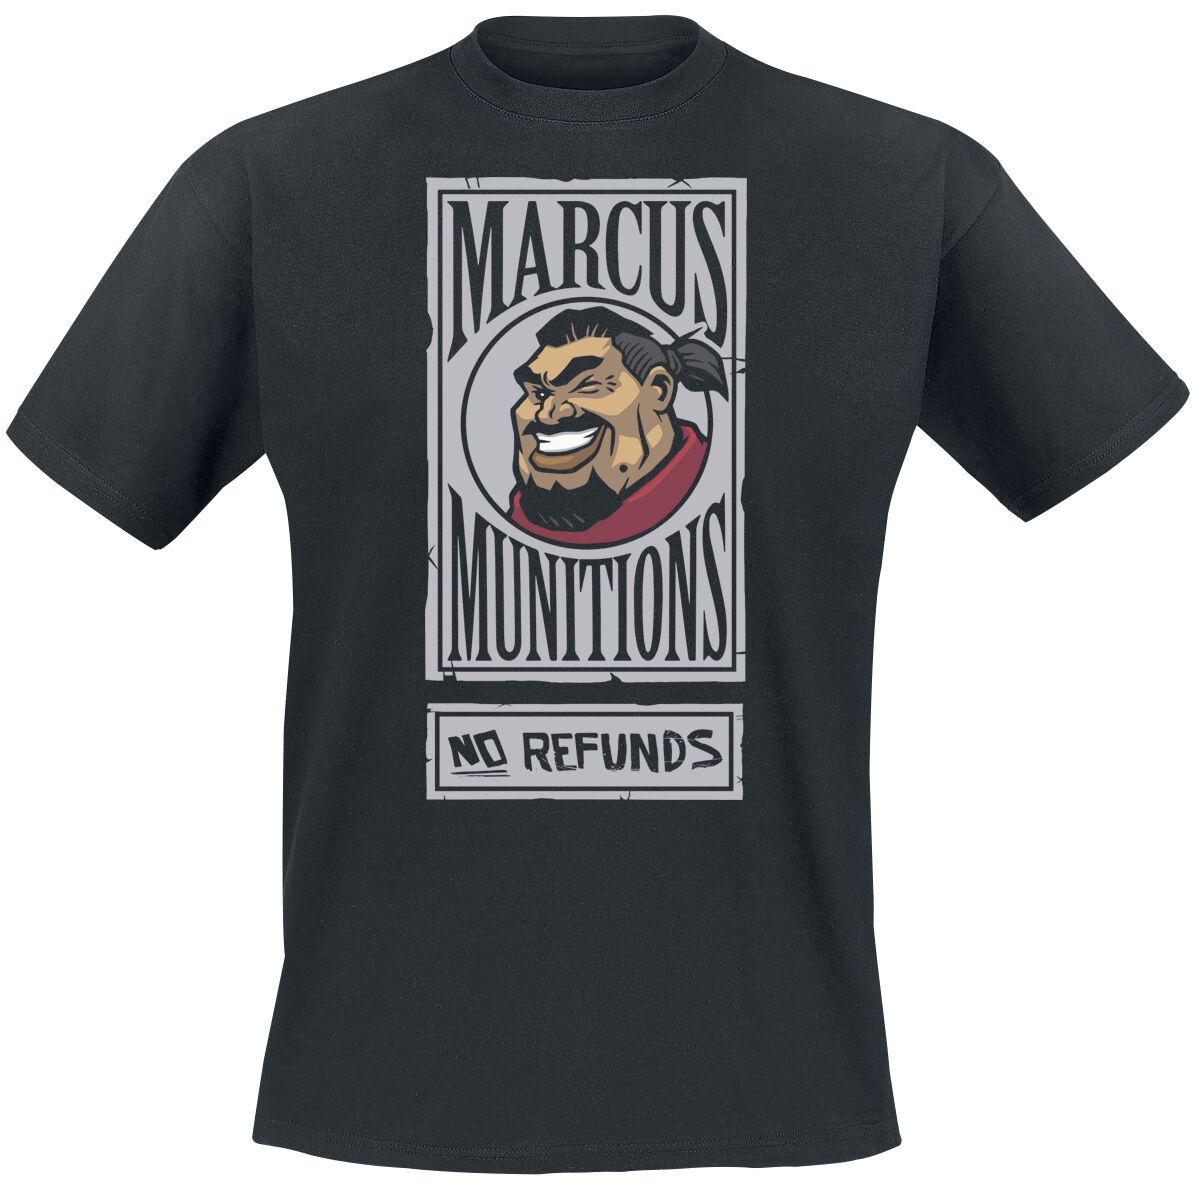 Borderlands - Gaming T-Shirt - 3 - Marcus Munitions - S bis XL - für Männer - Größe L - schwarz  - EMP exklusives Merchandise!